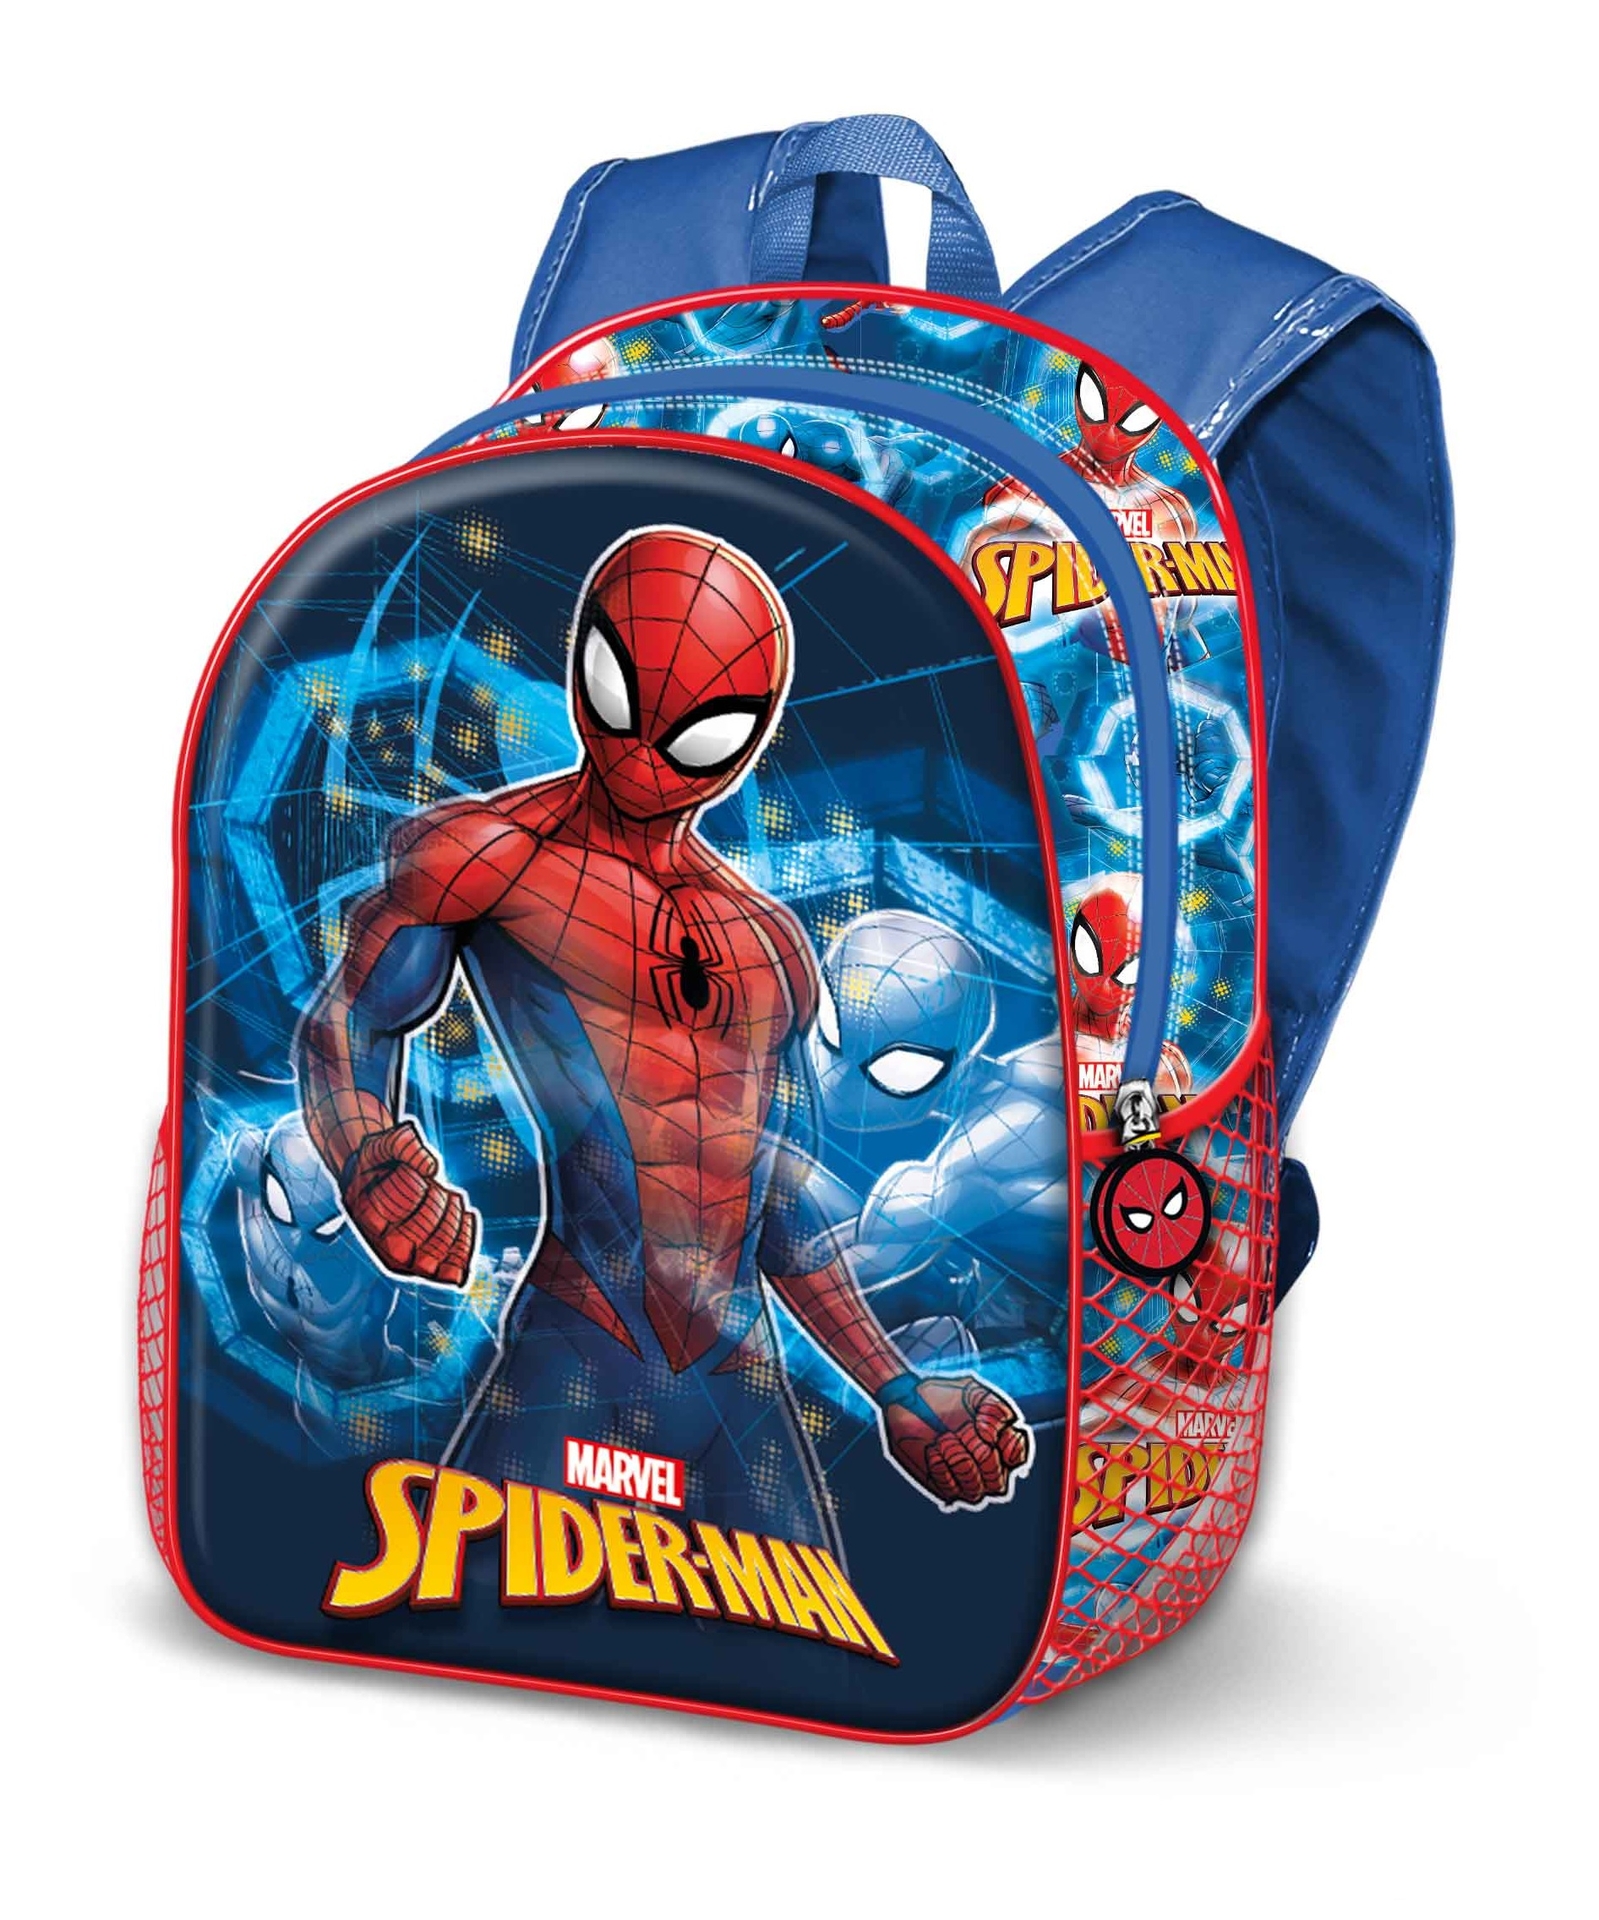 Levendig In detail Lodge Spiderman rugzak Powerful met vet coole 3D voorkant